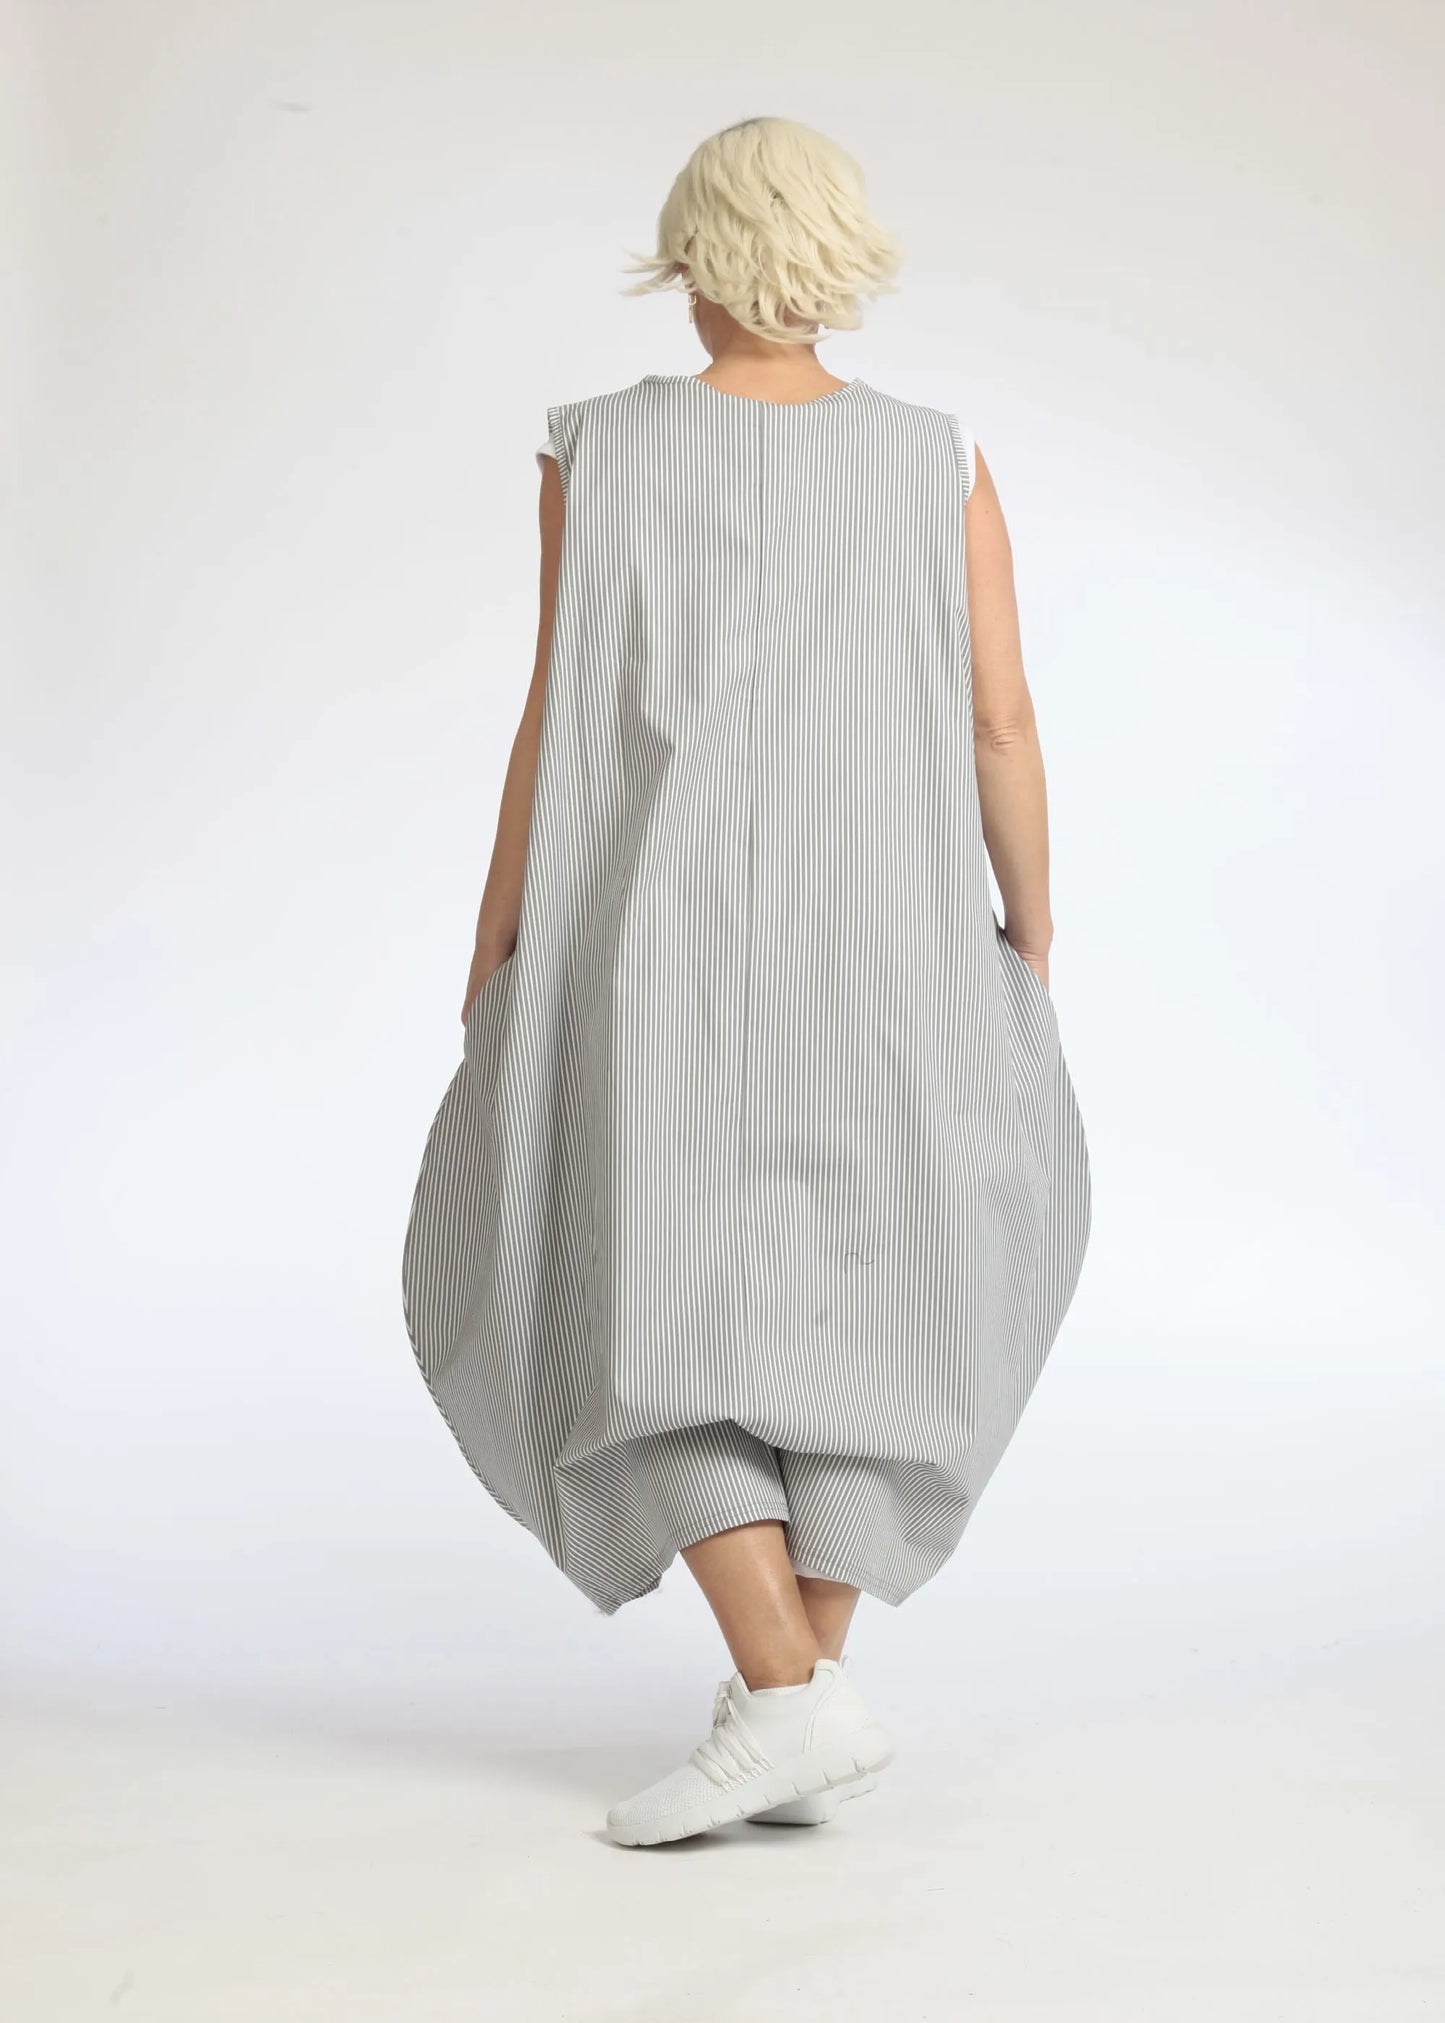 Sommer Kleid in Ballon Form aus glatter Popeline Qualität, Verena in Grau-Weiß